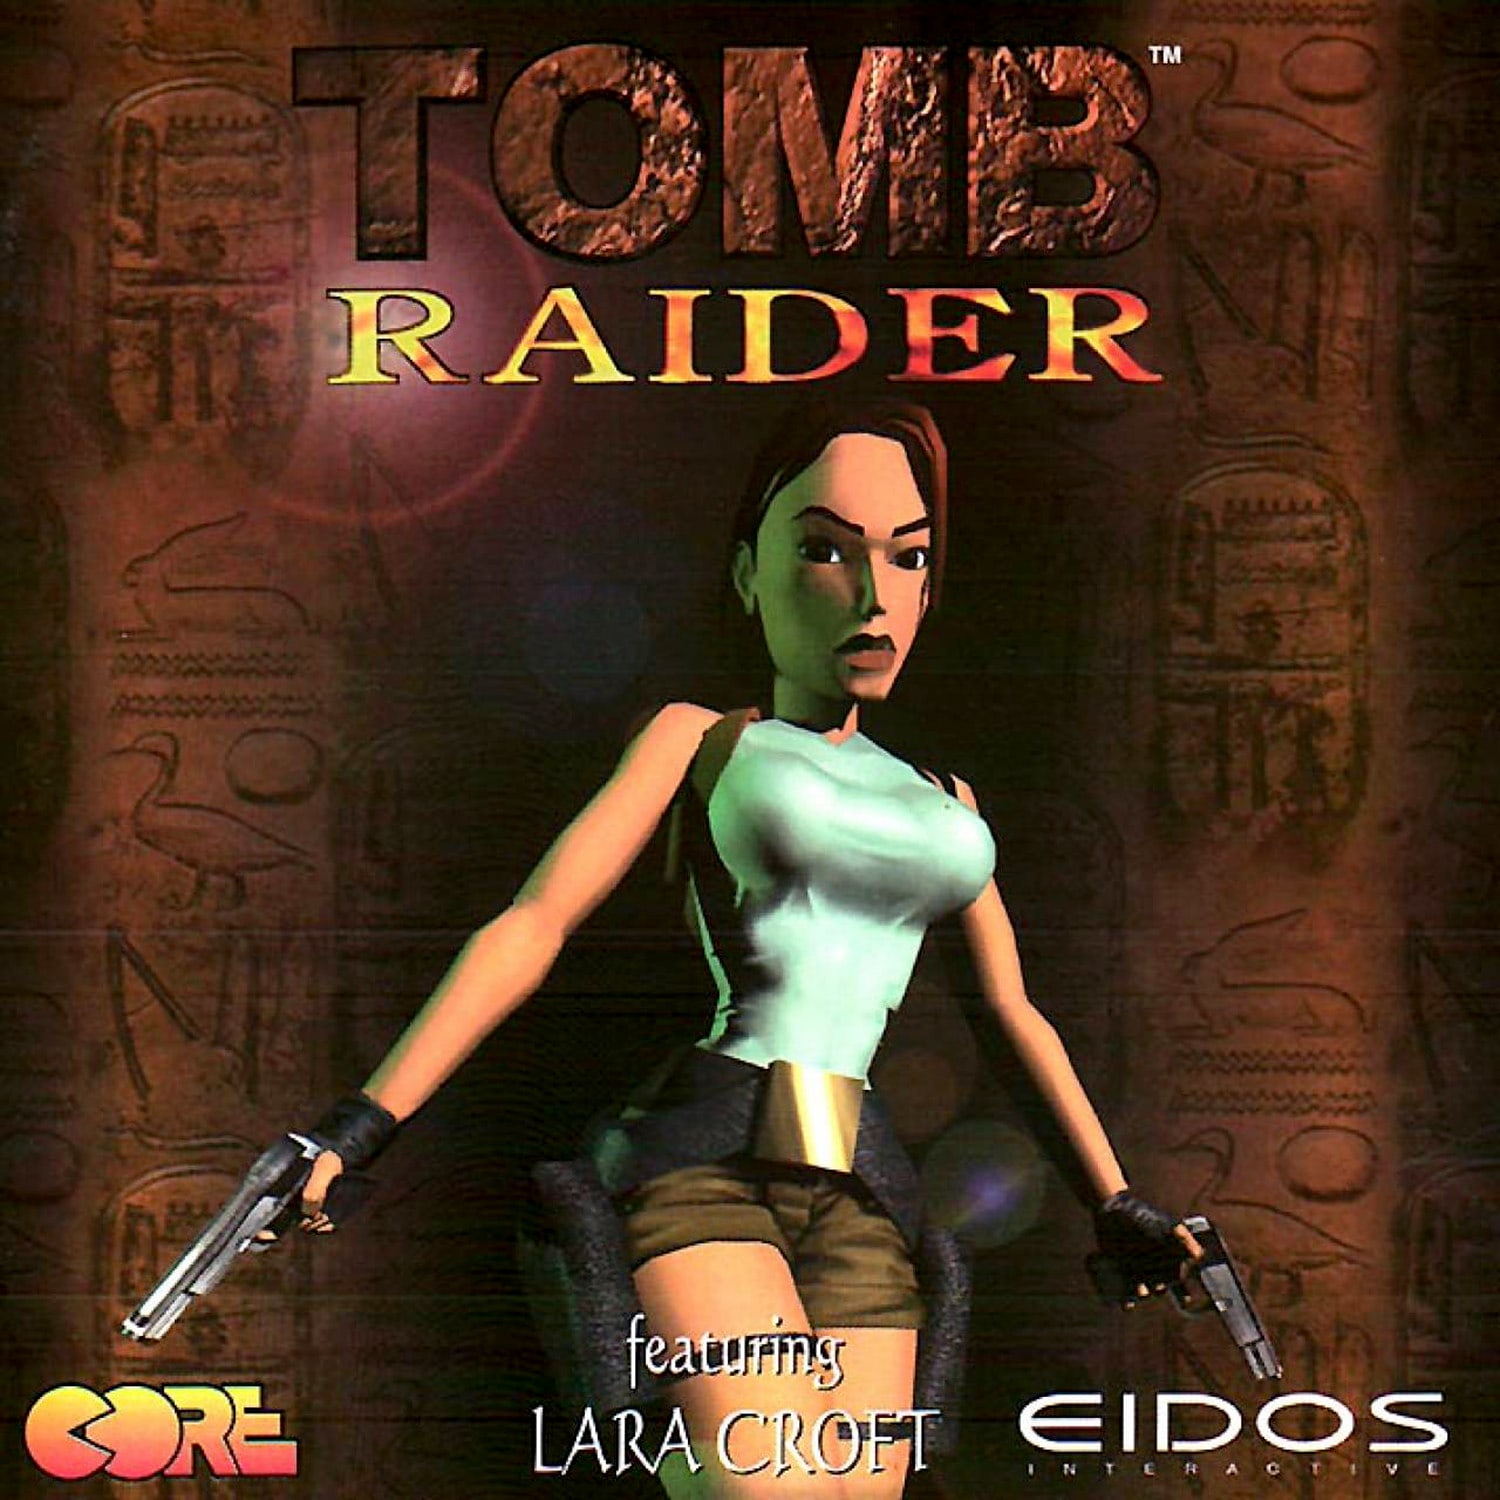 tomb raider pc game